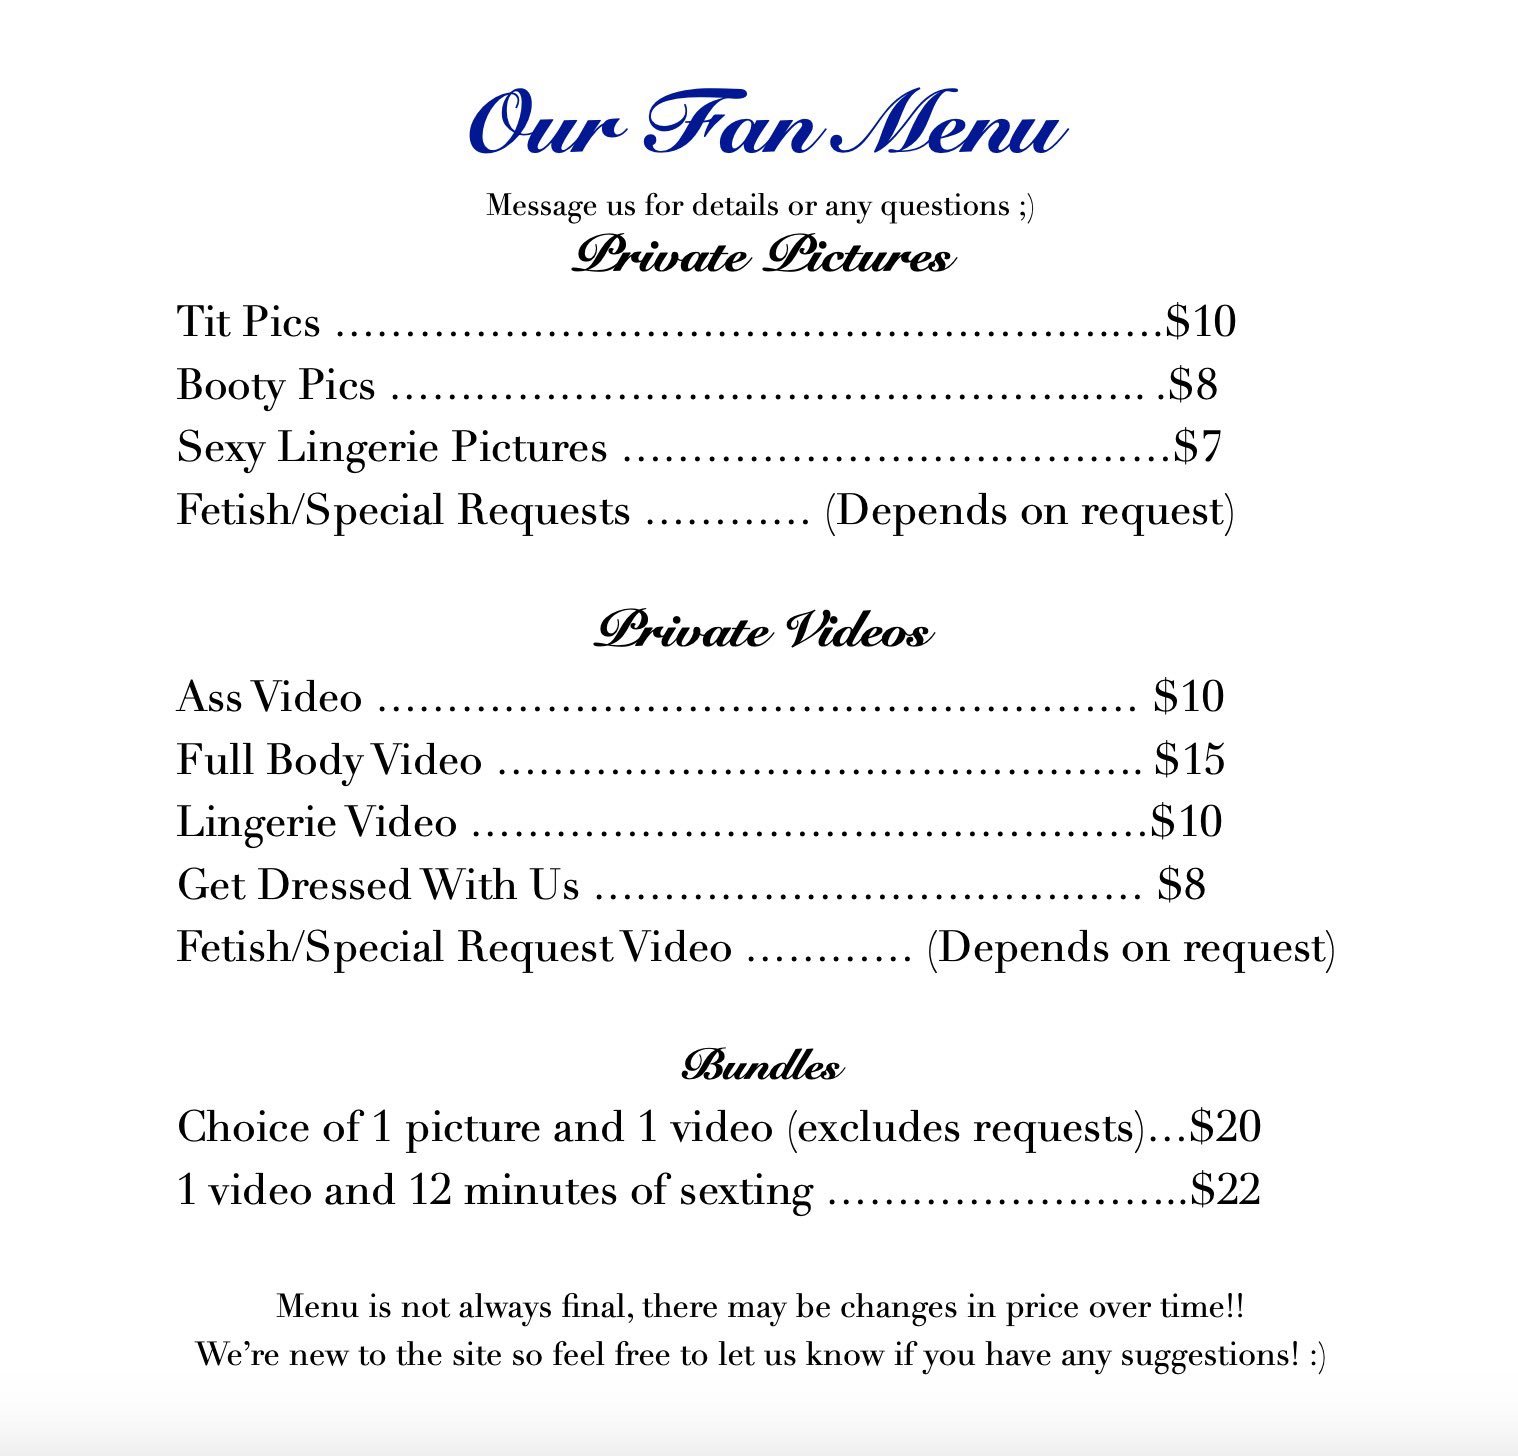 Only fans menu